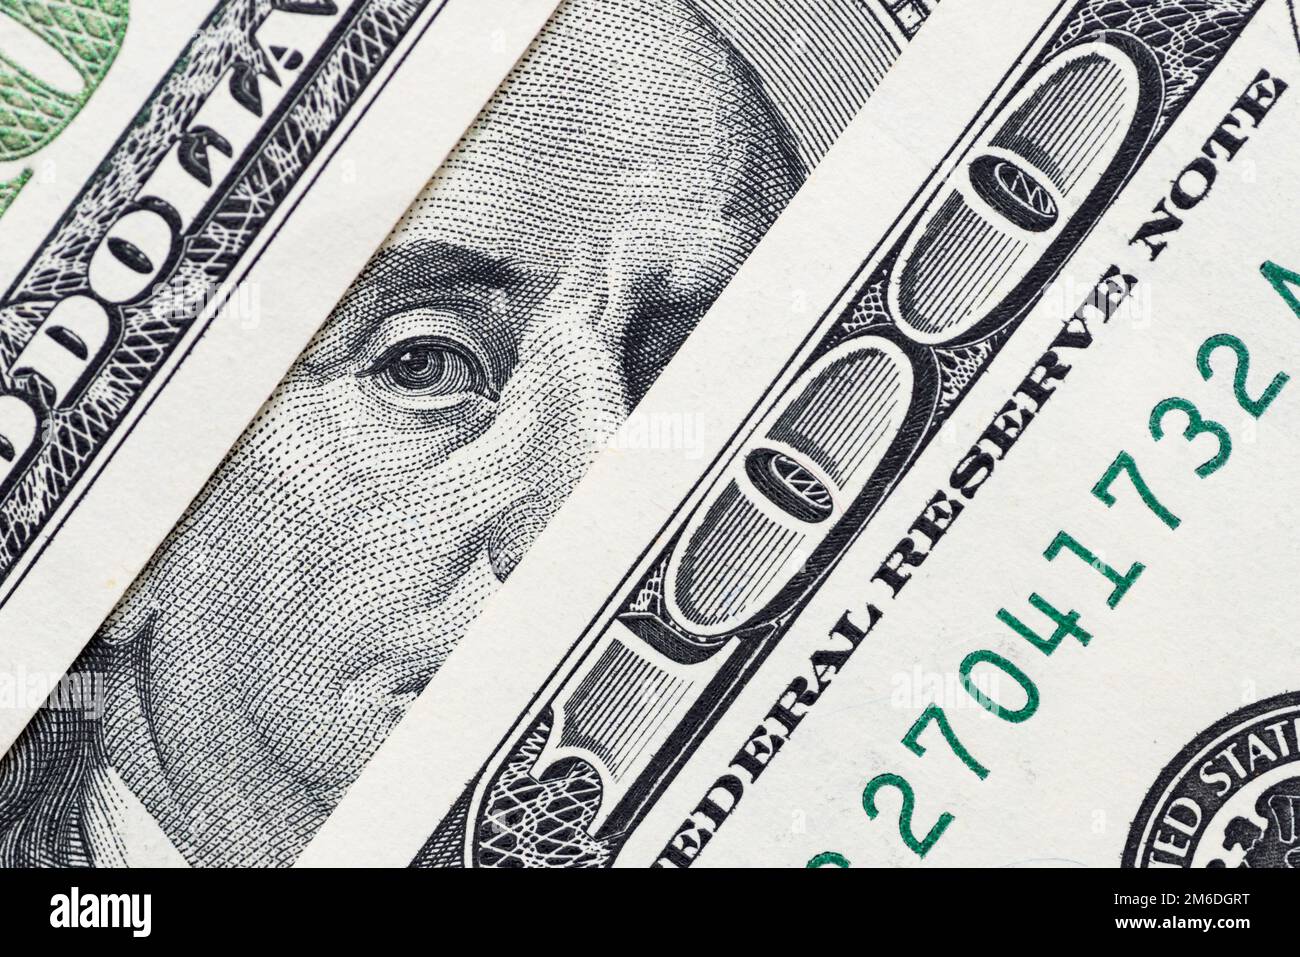 Benjamin Franklin's eyes from a hundred-dollar bill. 100 dollar bill Stock Photo